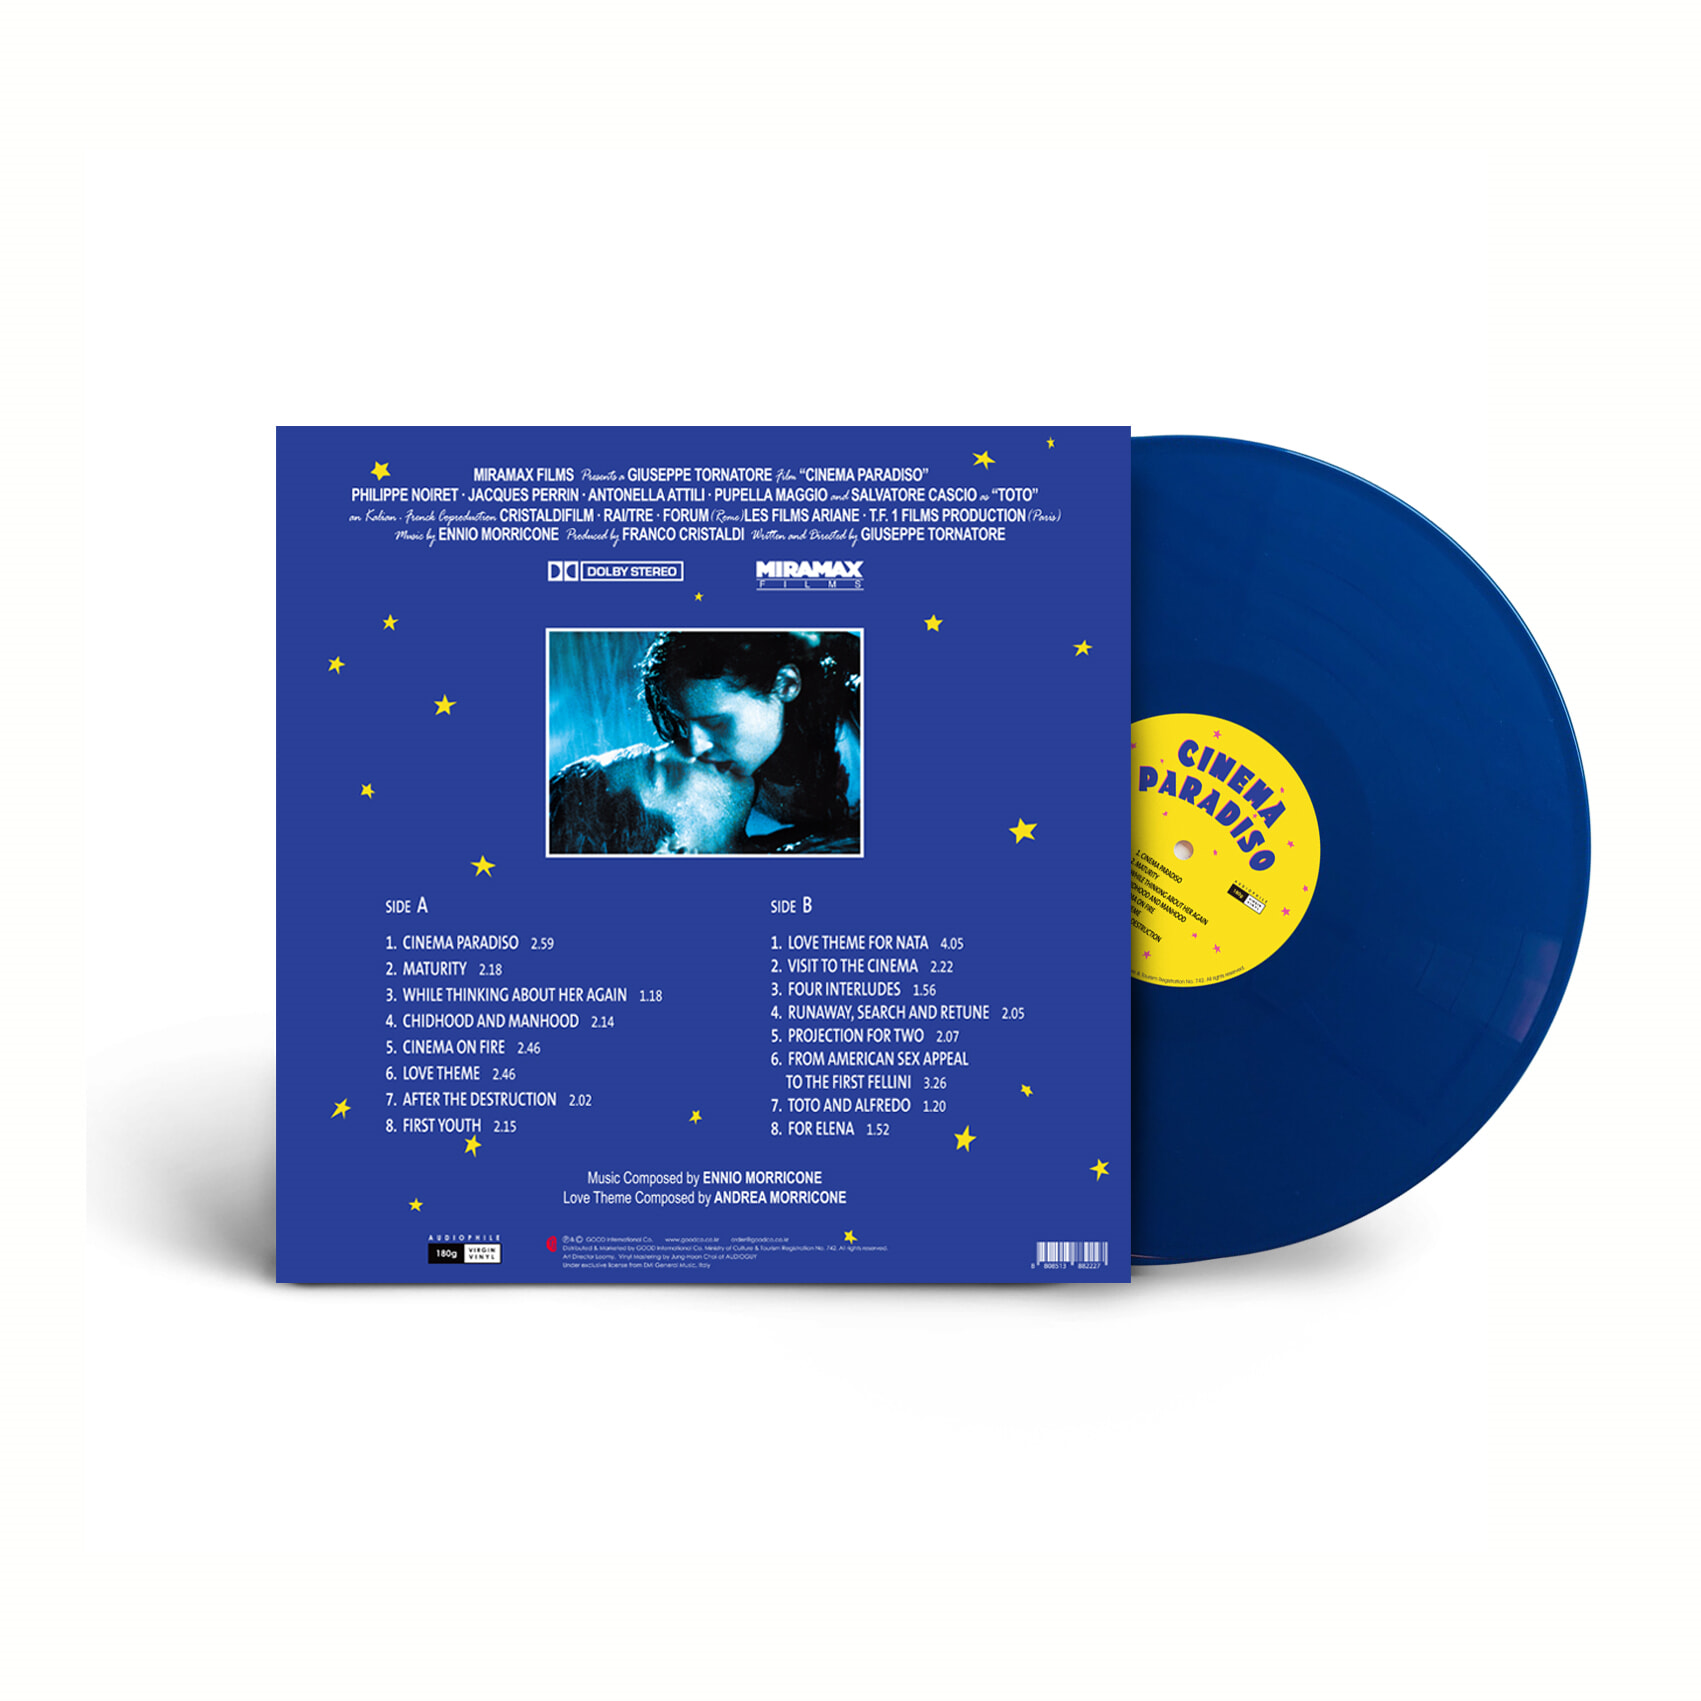 시네마 천국 영화음악 (Cinema Paradiso OST by Ennio Morricone 엔니오 모리꼬네) [블루 컬러 LP+CD] 